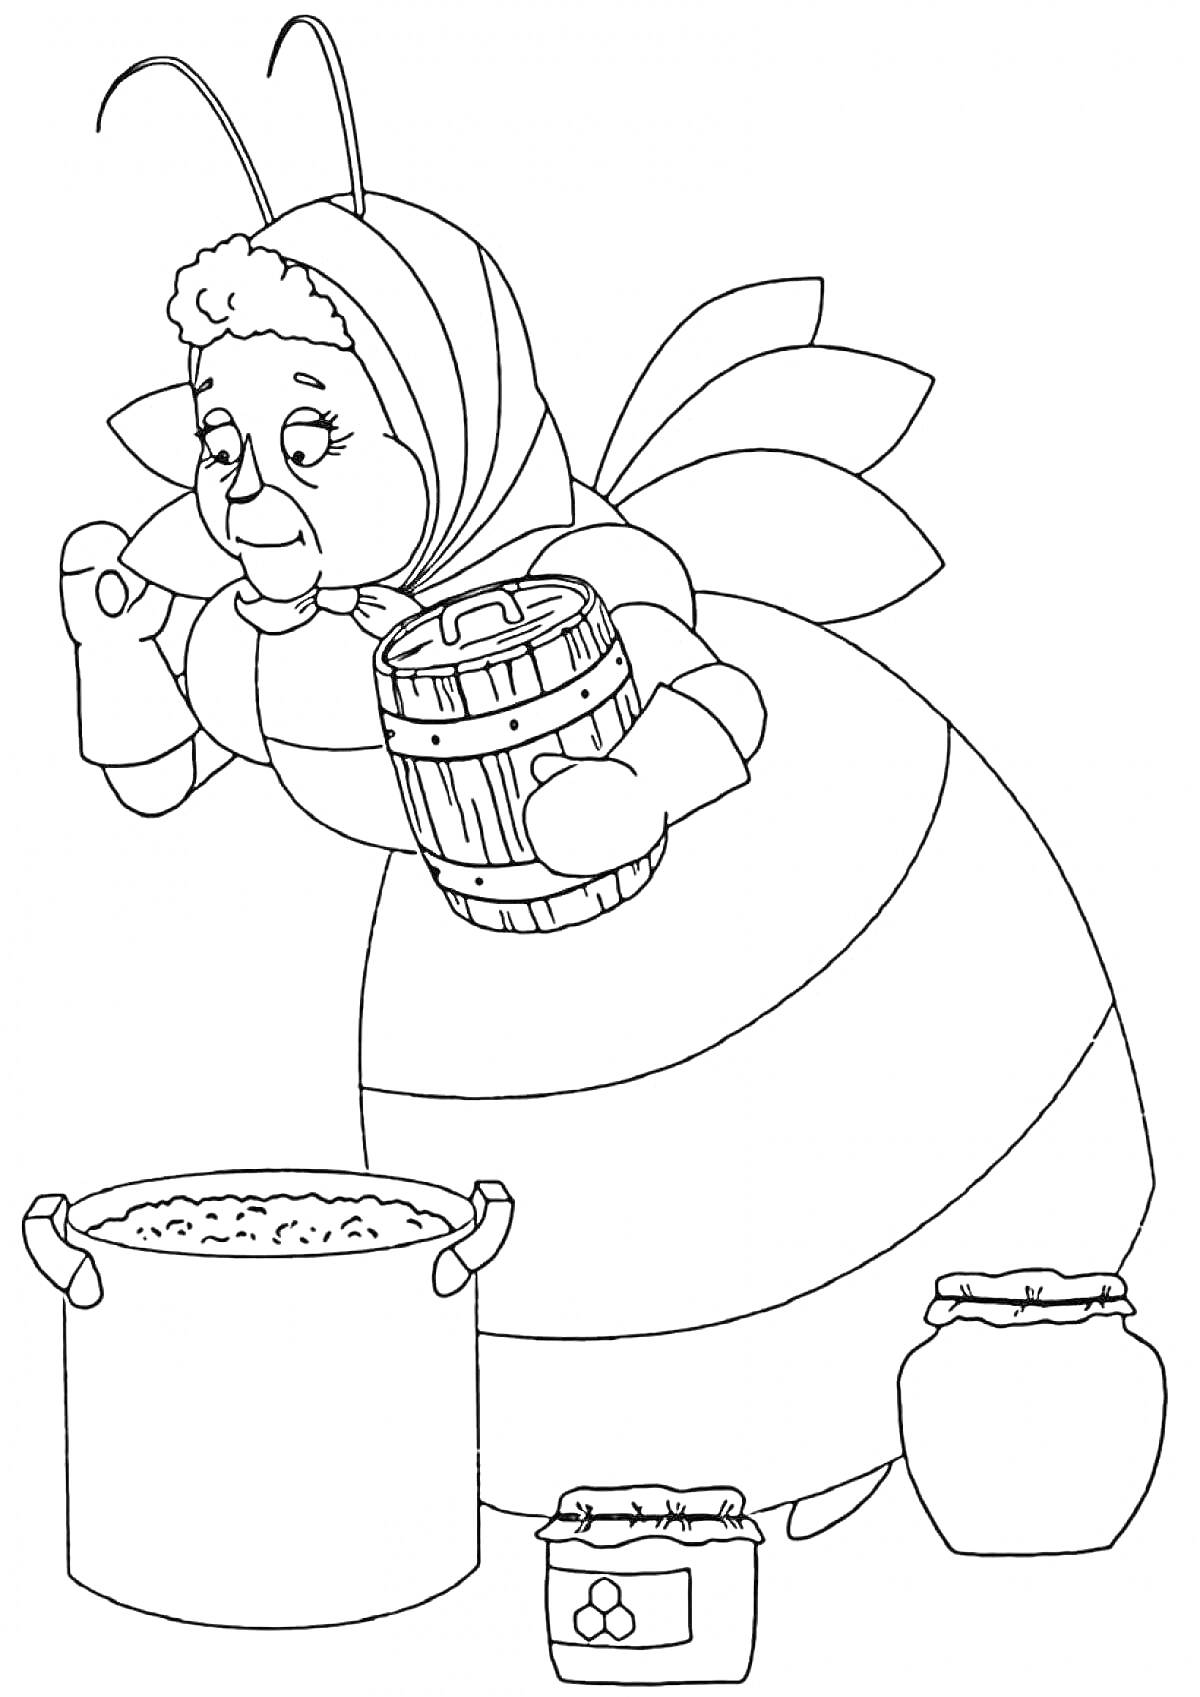 Баба Капа держит бочонок и помешивает еду в кастрюле, рядом стоят два горшка с едой